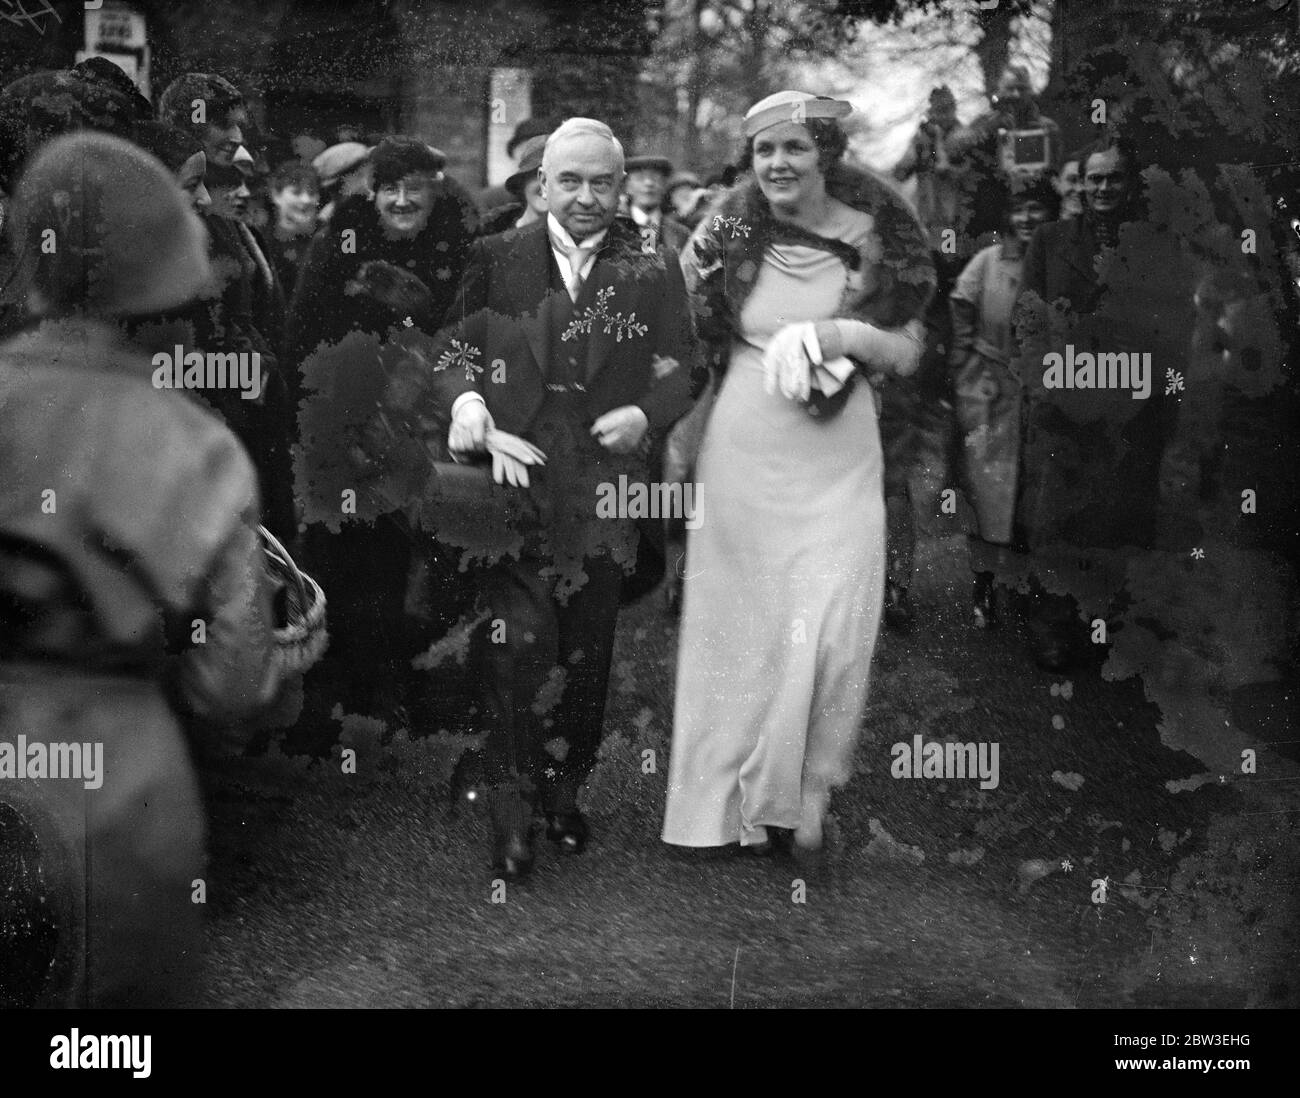 Der Lord Chief Justice, Lord Hewart, heiratete in der Dorfkirche in Totteridge, zu Miss Jean Stewart, die Braut, die ihn durch seine Krankheit genährt. 29 Dezember 1934 Stockfoto